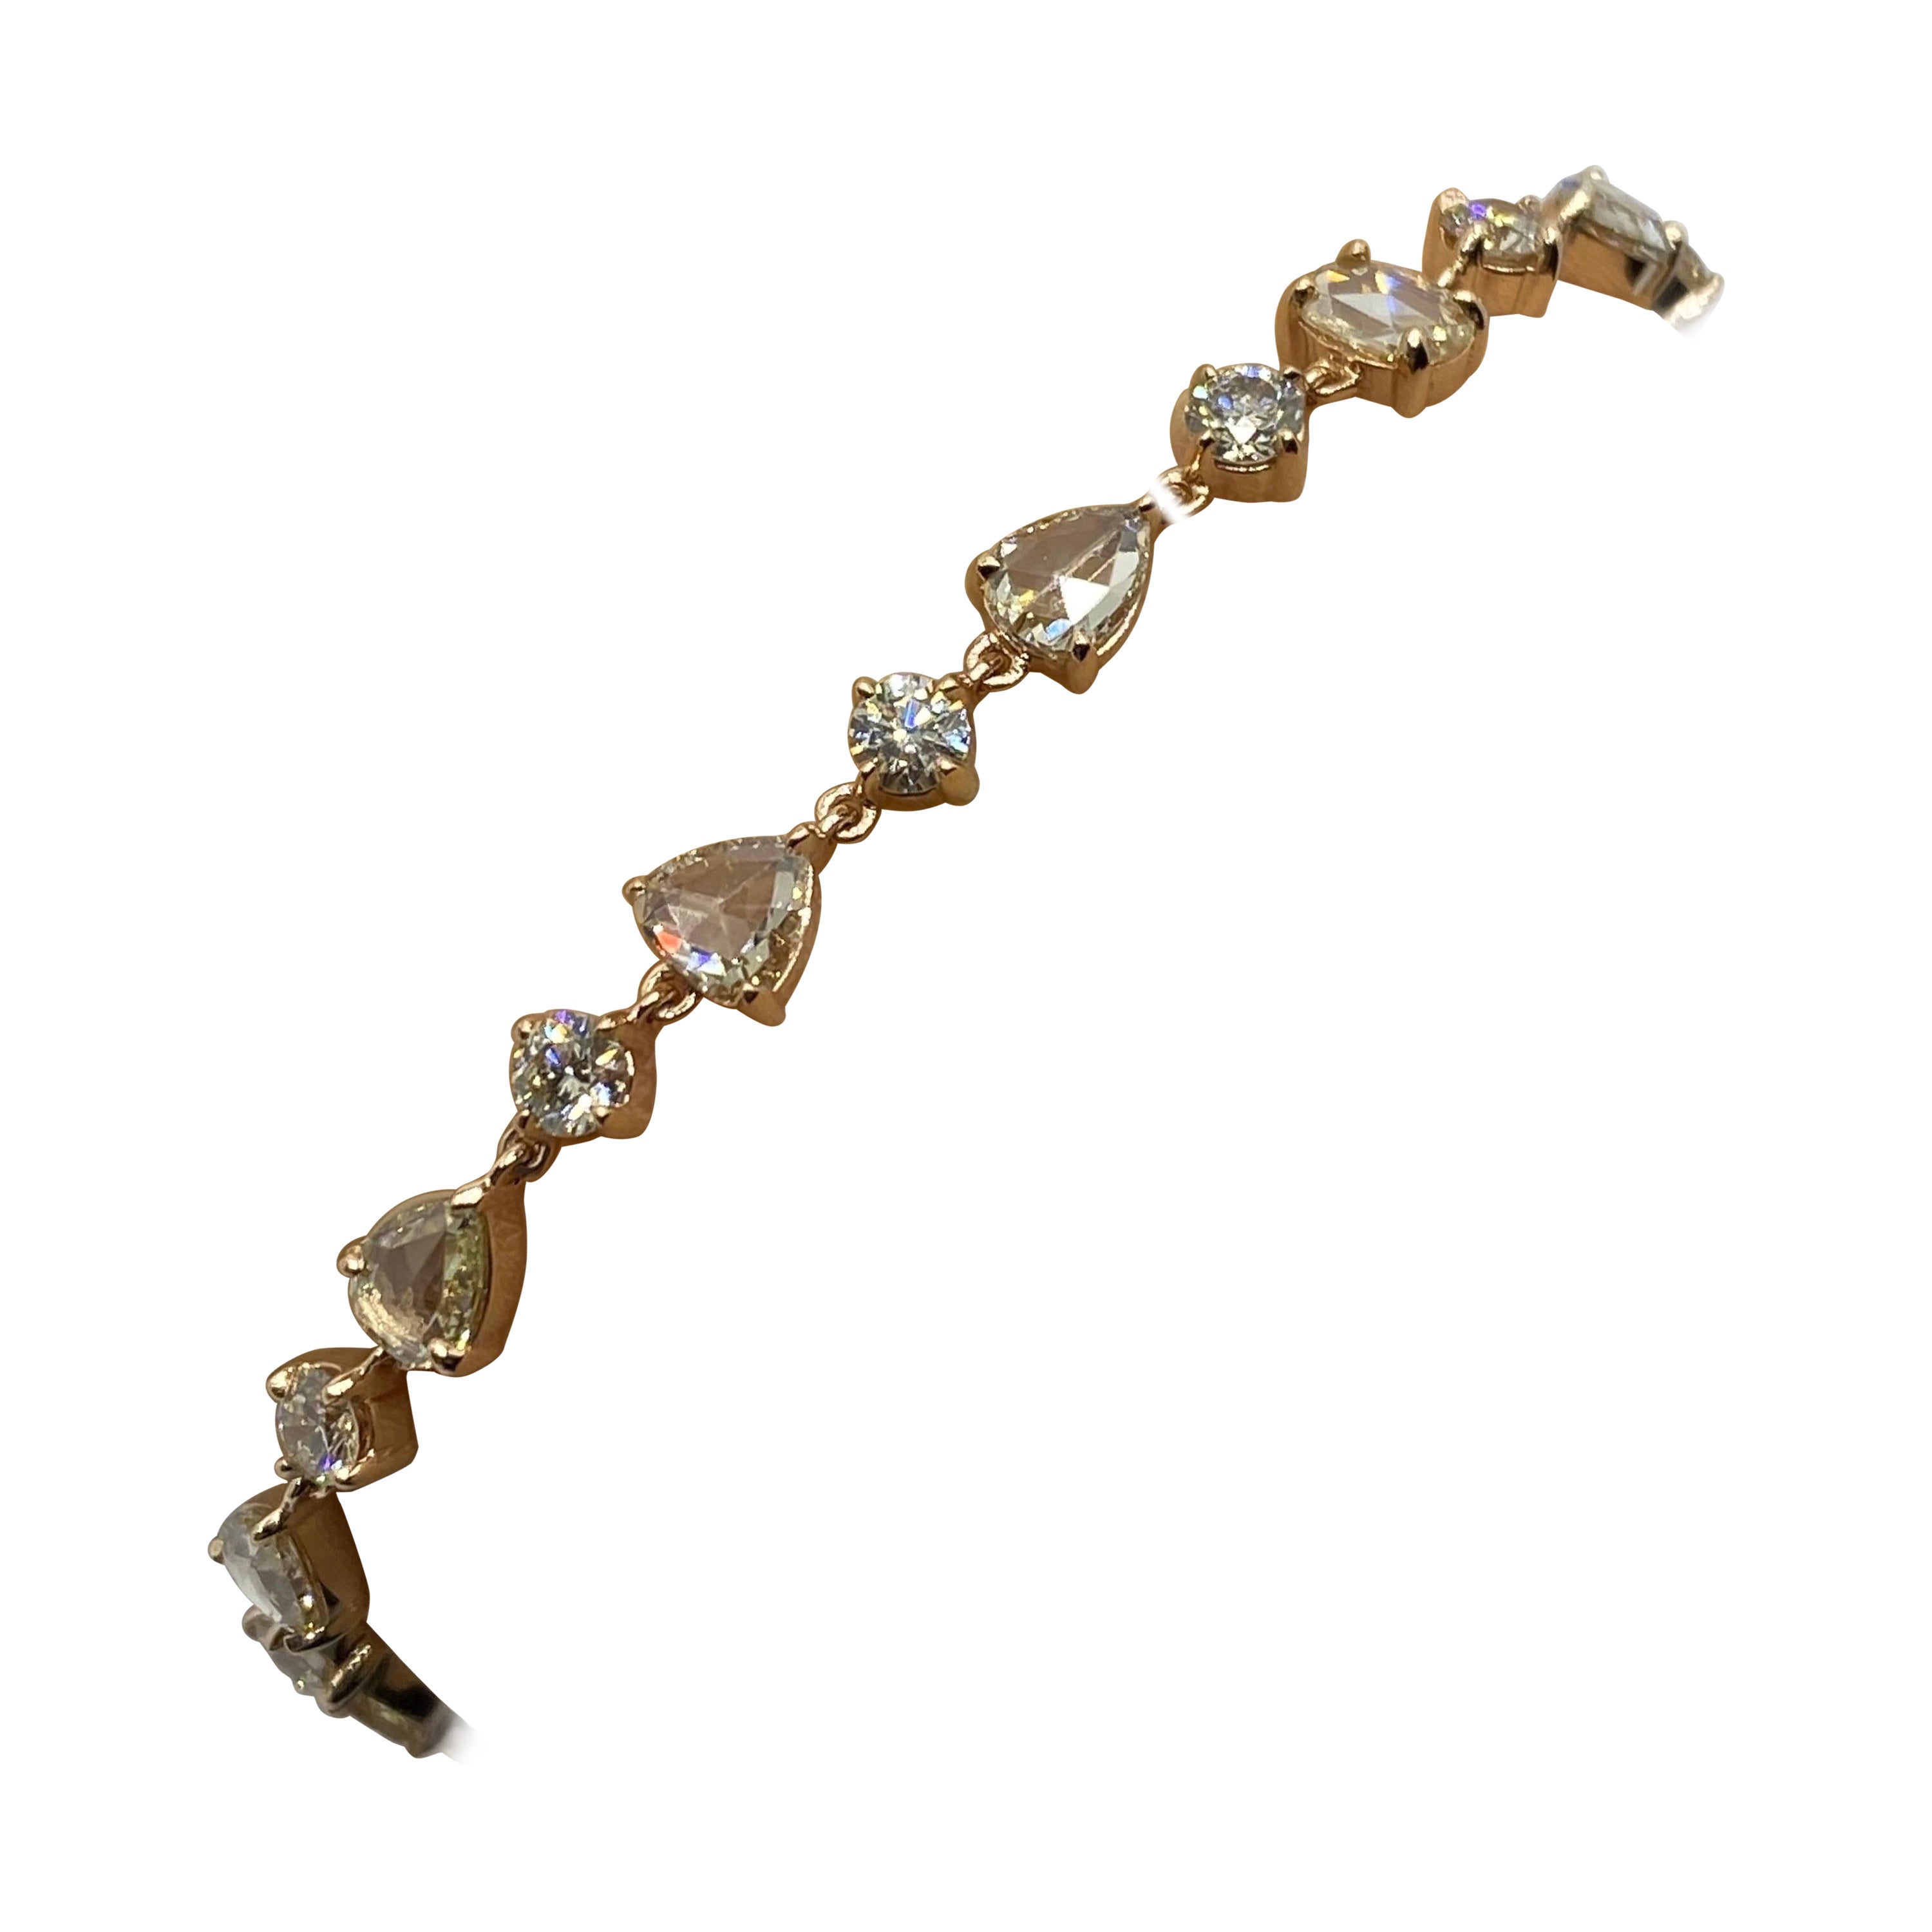 Bracelet en or rose 18 carats avec diamants